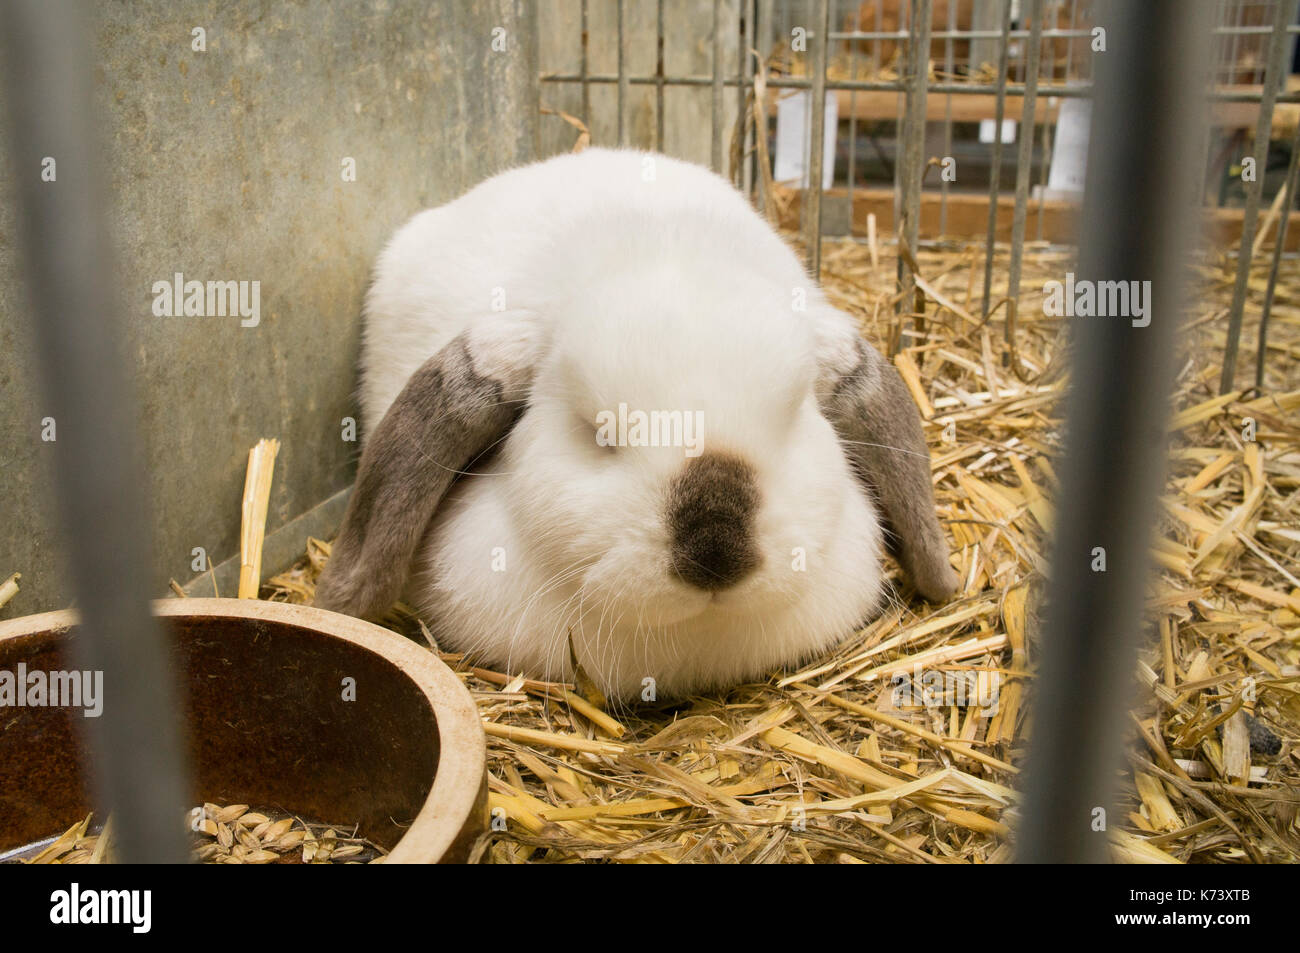 Esposizione nazionale di conigli giovani,pollame e piccioni 2017 (animali da allevamento),lop dwarf russo coniglio nero Foto Stock